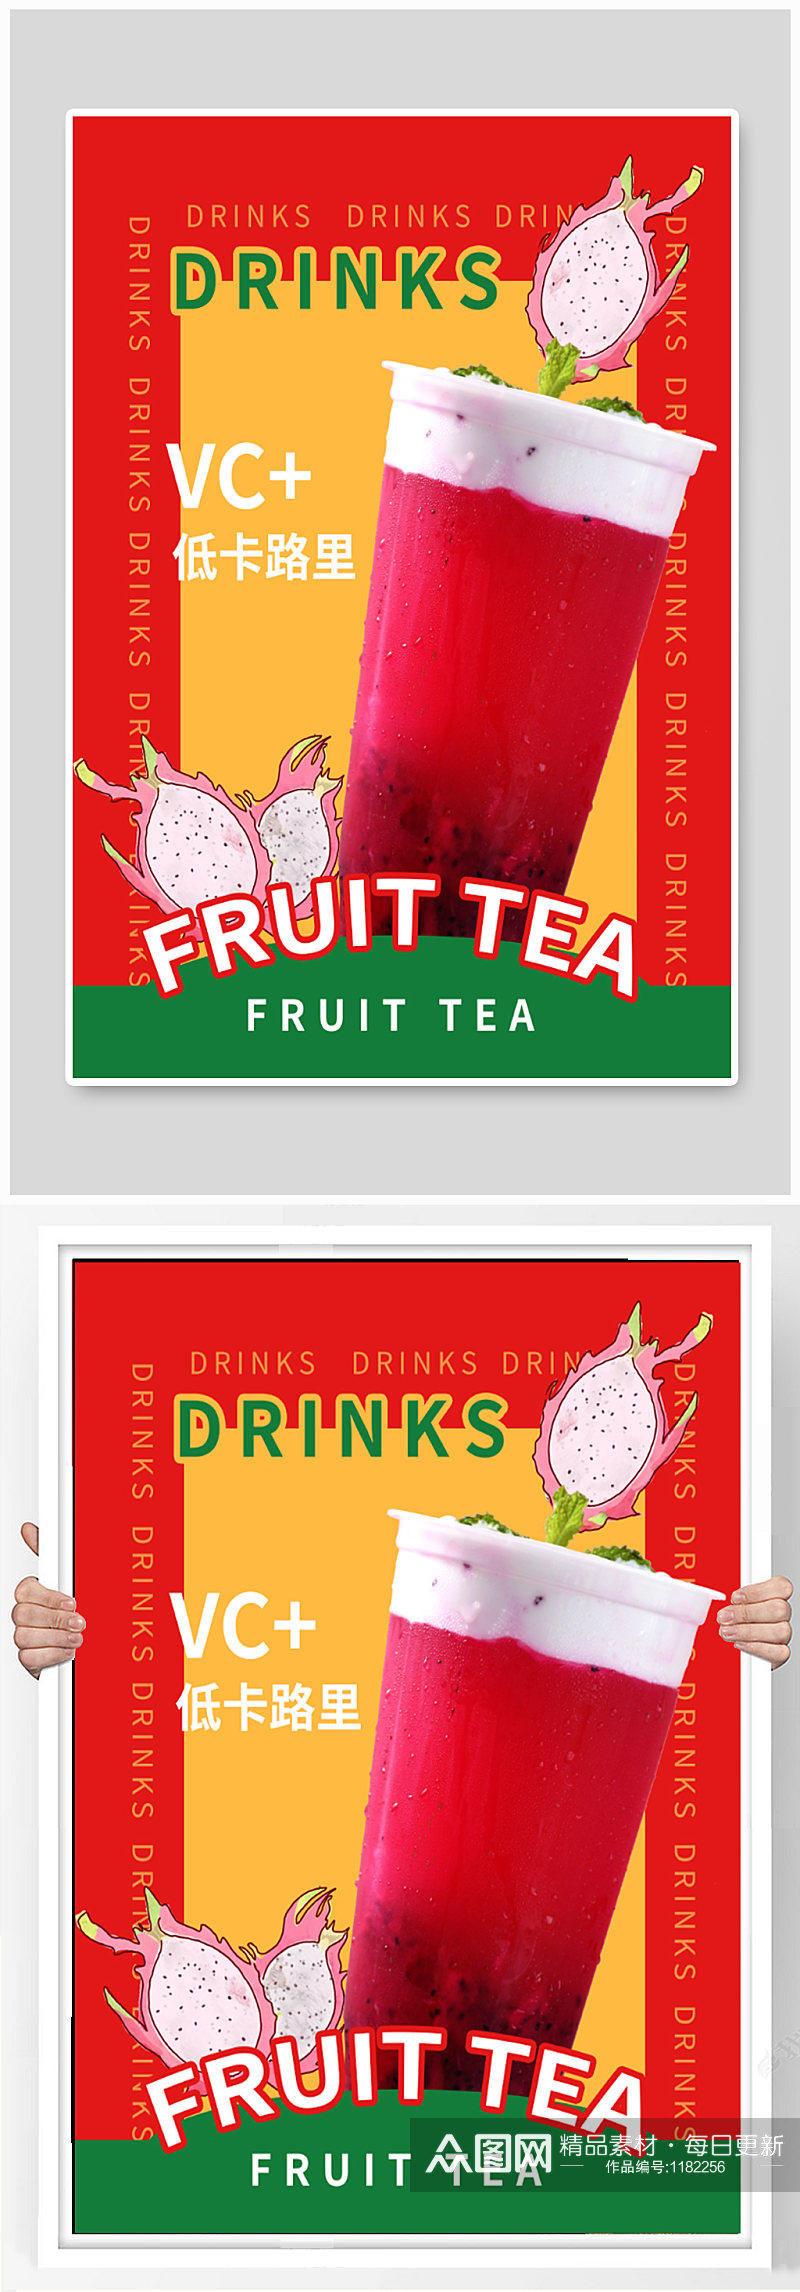 果茶饮品宣传海报素材